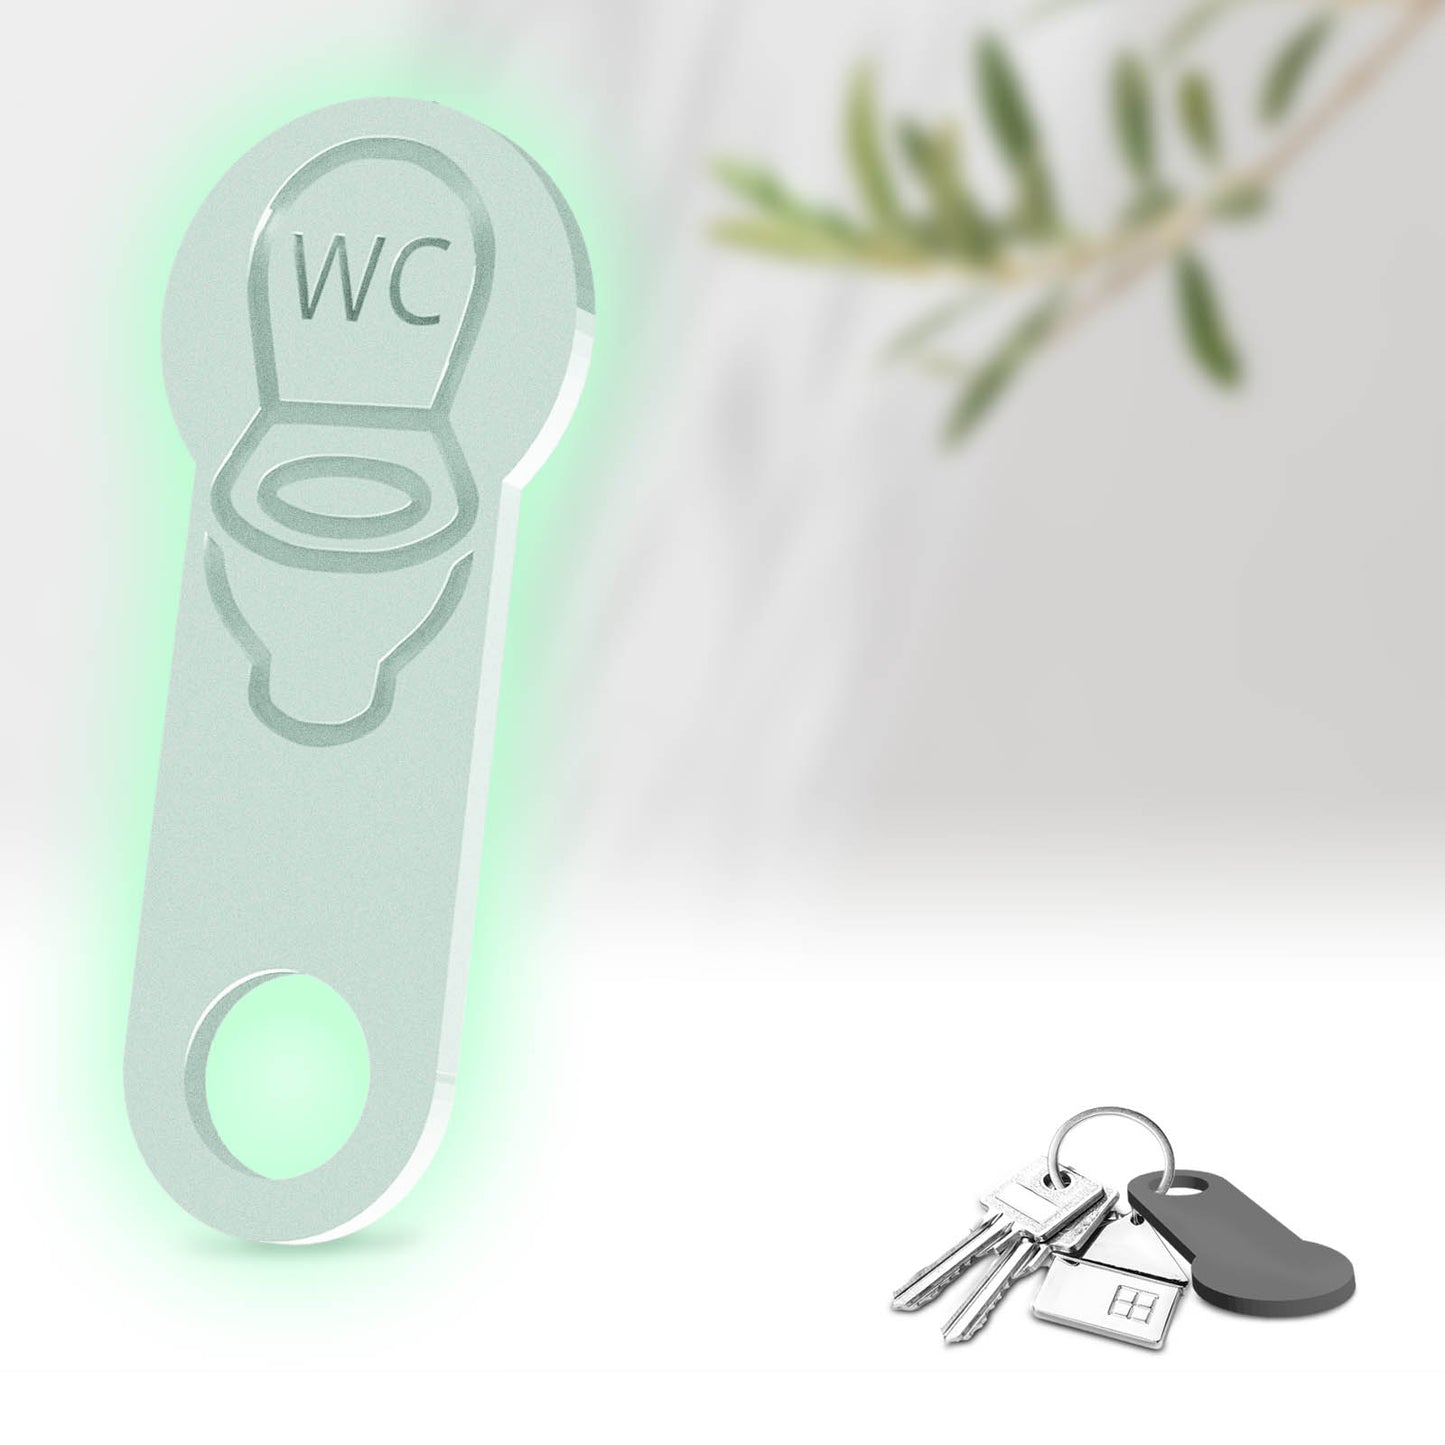 Der WC Schlüsselanhänger – Entweder ein praktischer Einkaufswagenchip oder ein bequemer Begleiter für den Toilettenschlüssel.